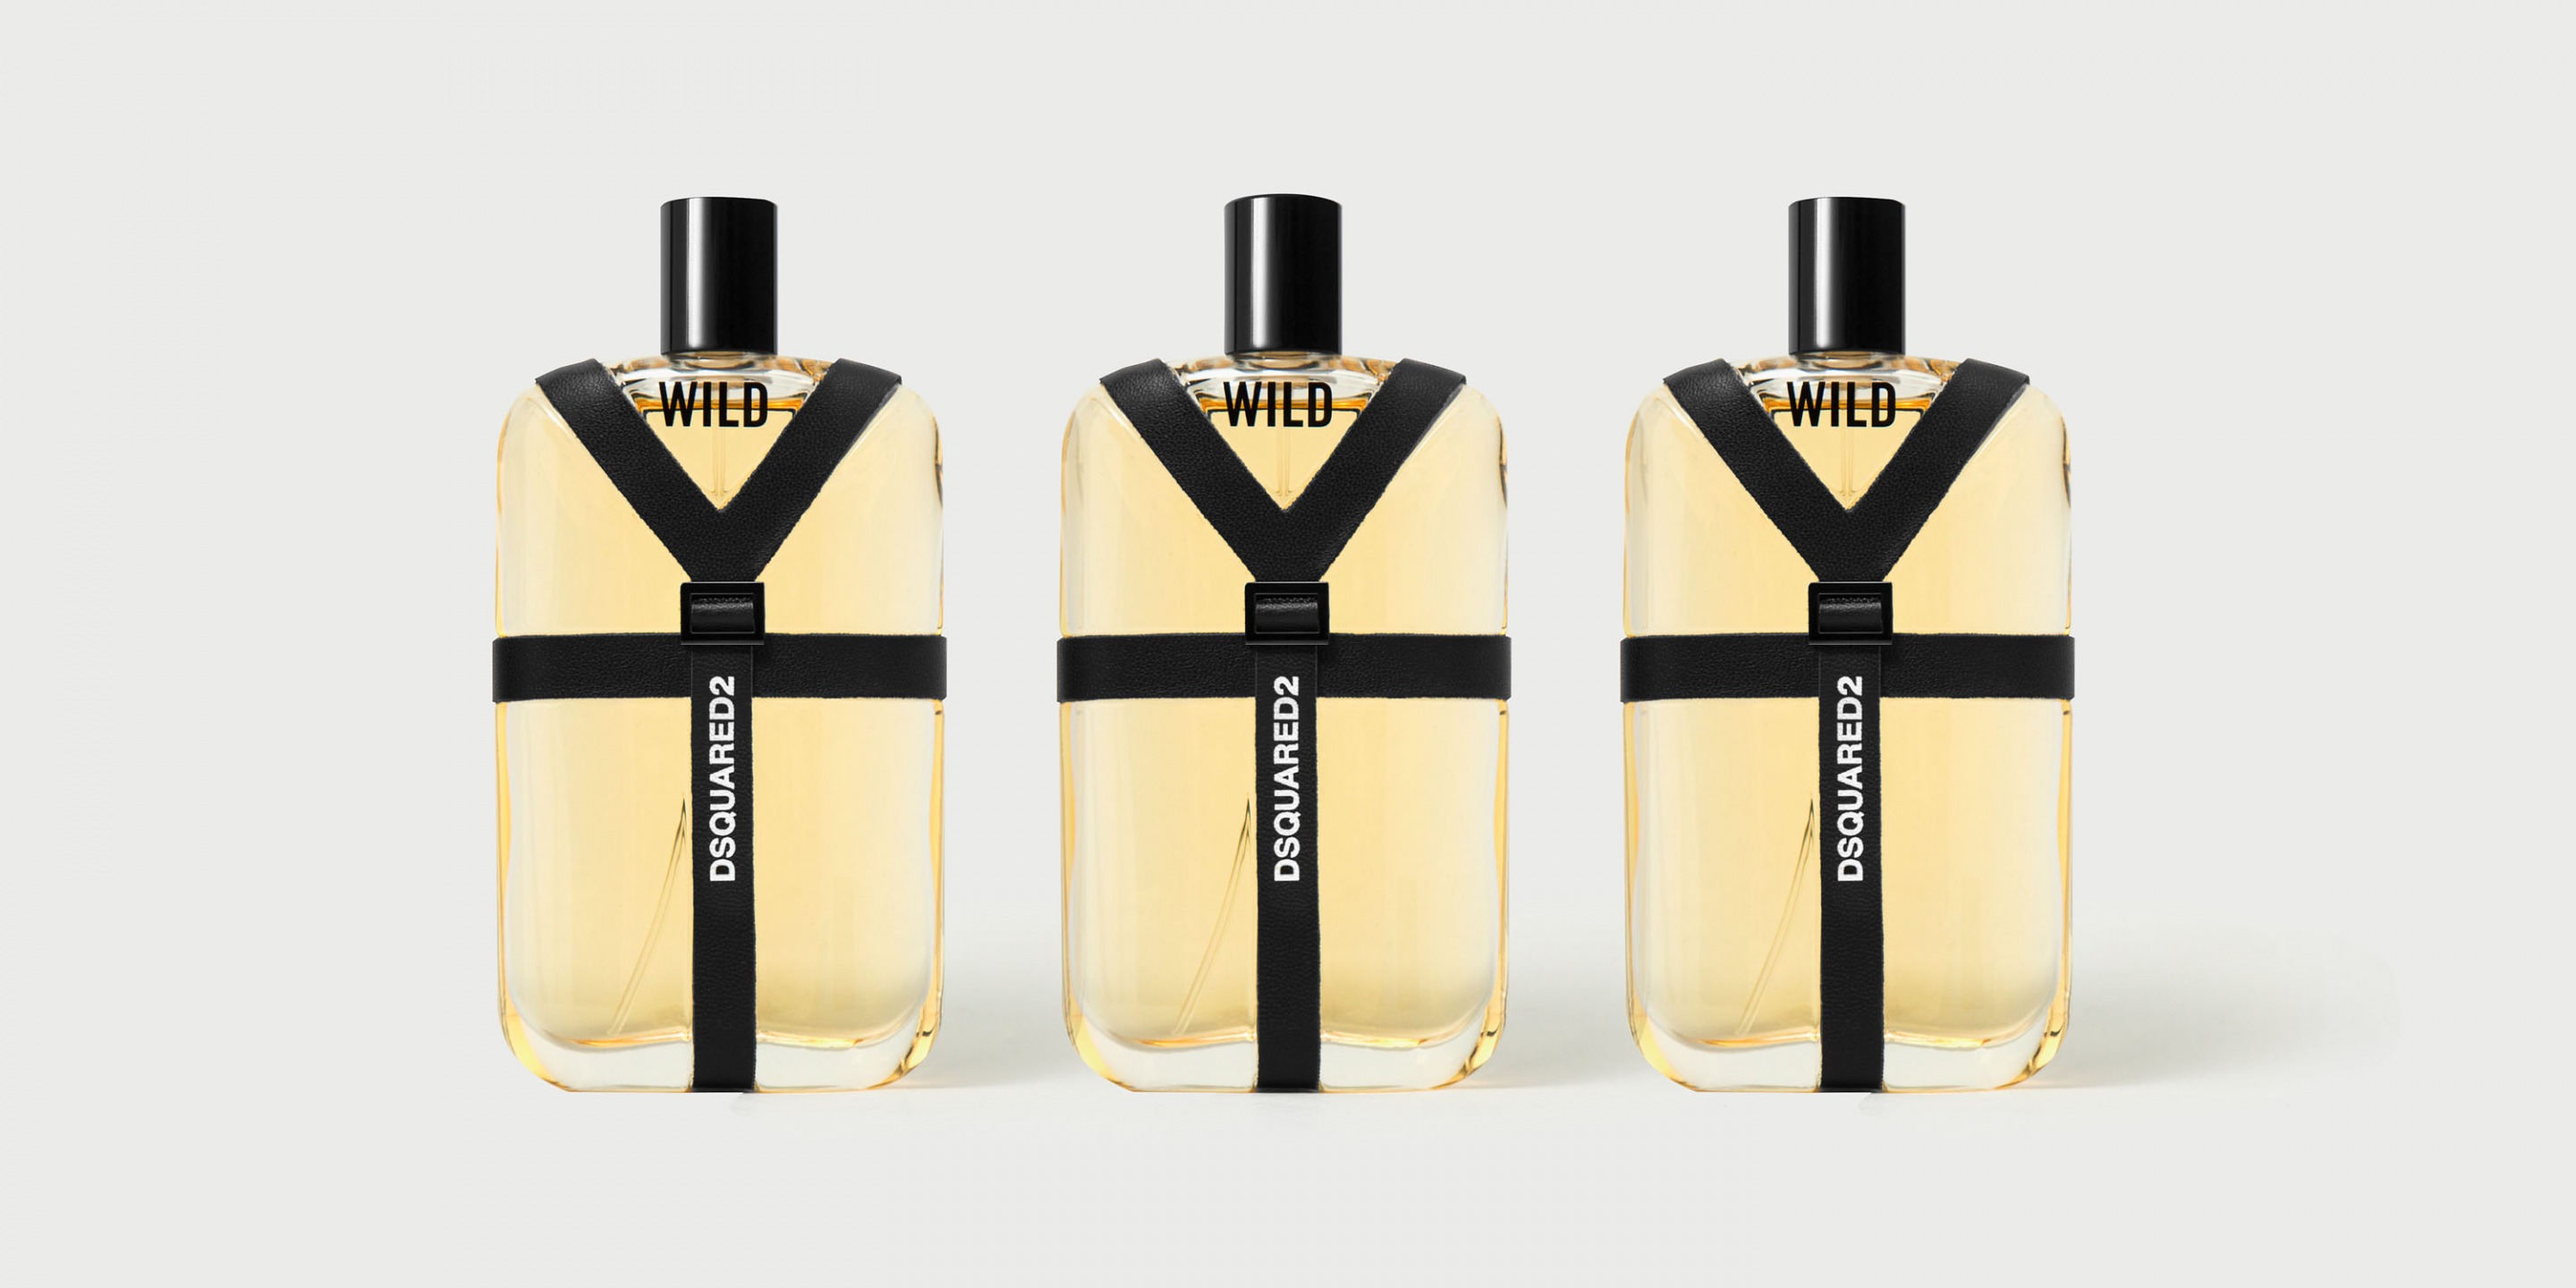 dsquared parfum wild